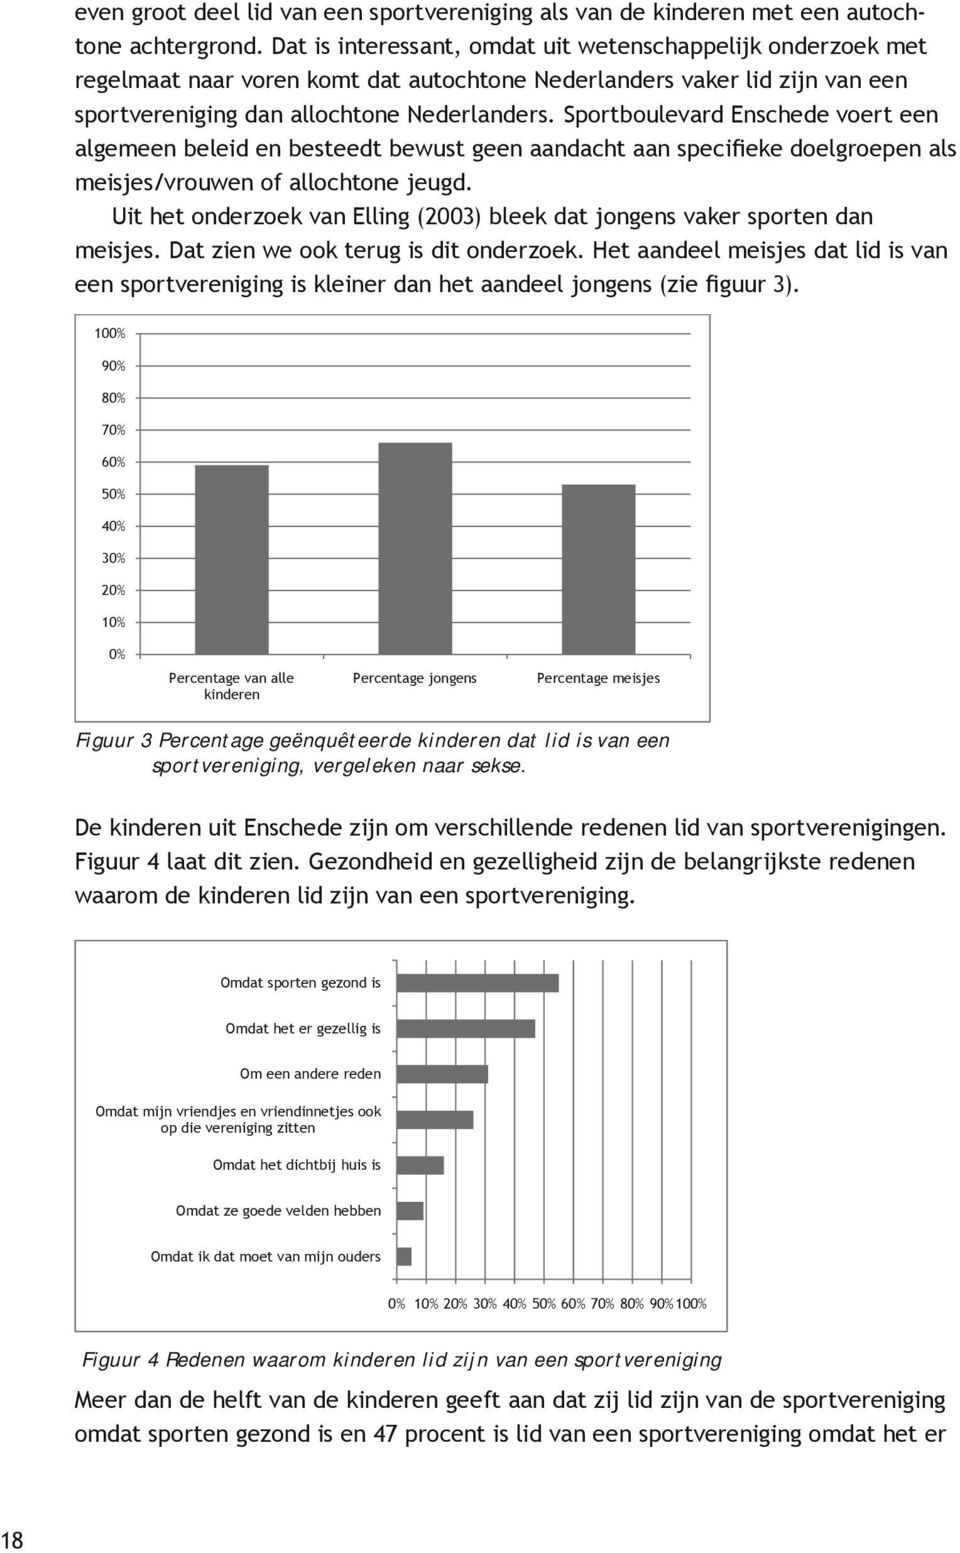 Sportboulevard Enschede voert een algemeen beleid en besteedt bewust geen aandacht aan specifieke doelgroepen als meisjes/vrouwen of allochtone jeugd.